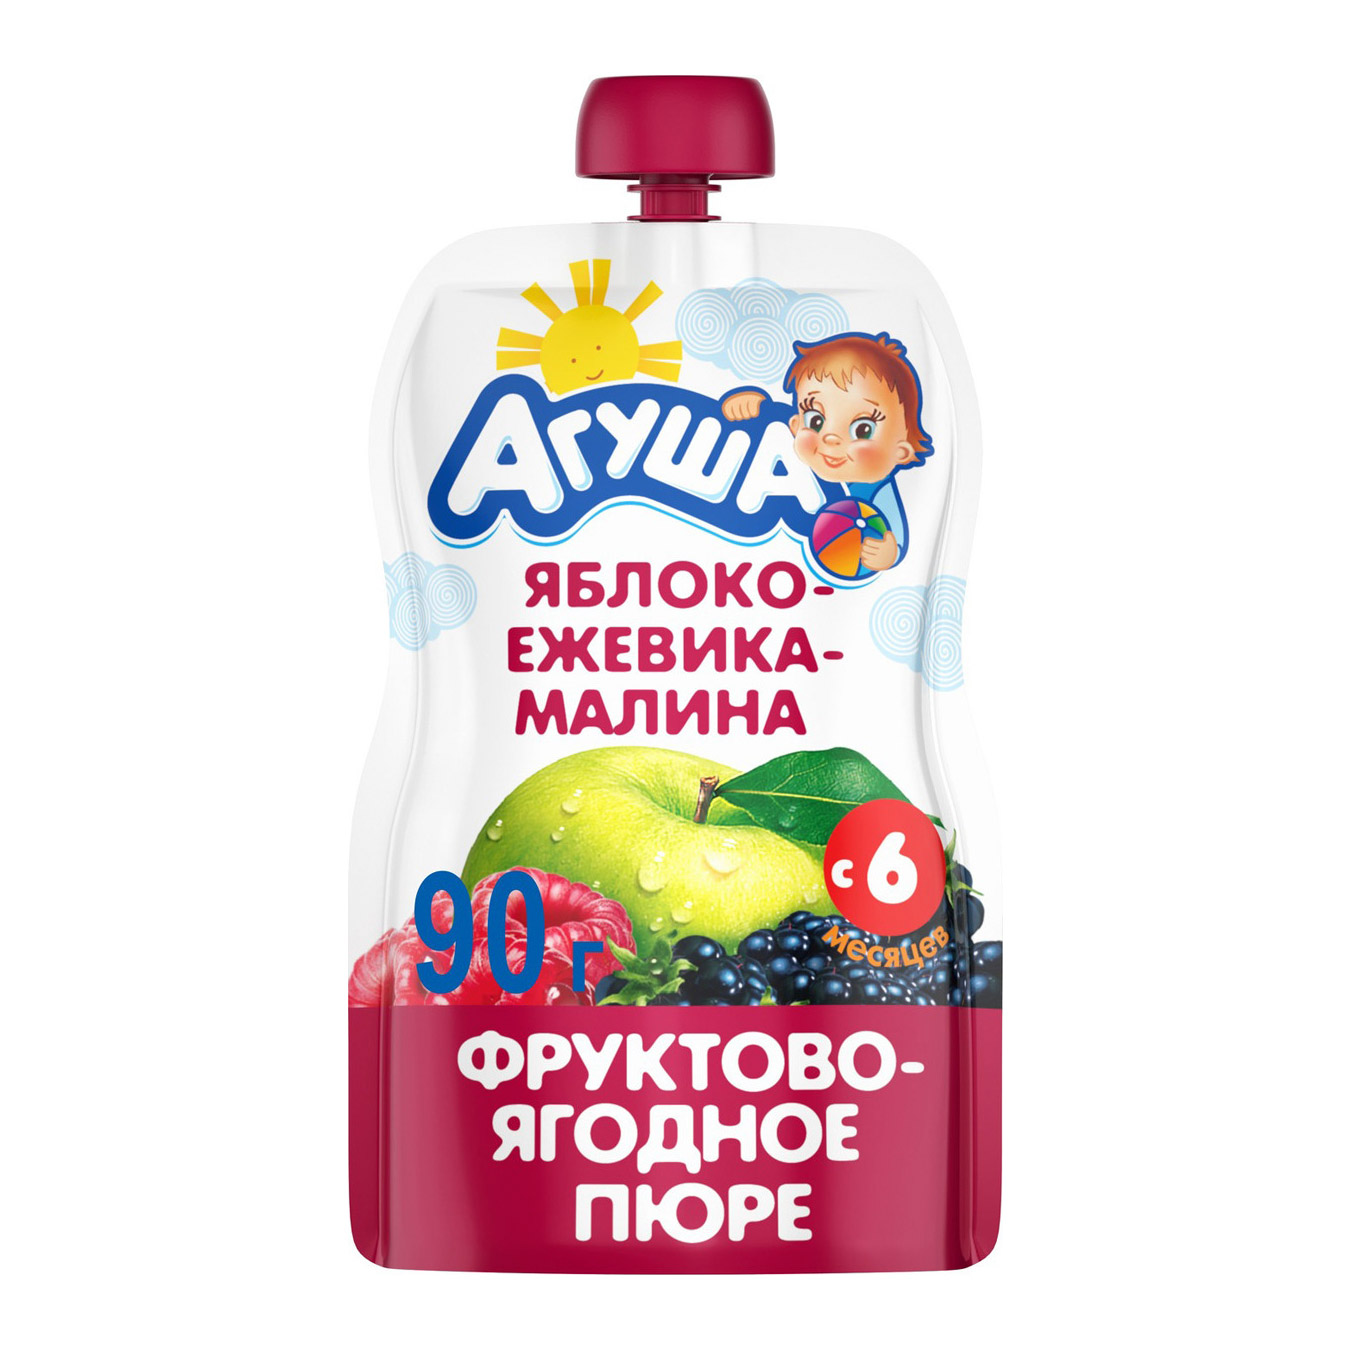 Пюре фруктово-ягодное Агуша Яблоко-Ежевика-Малина 90 г пюре агуша яблоко ежевика малина с 5 месяцев 90 г 1шт